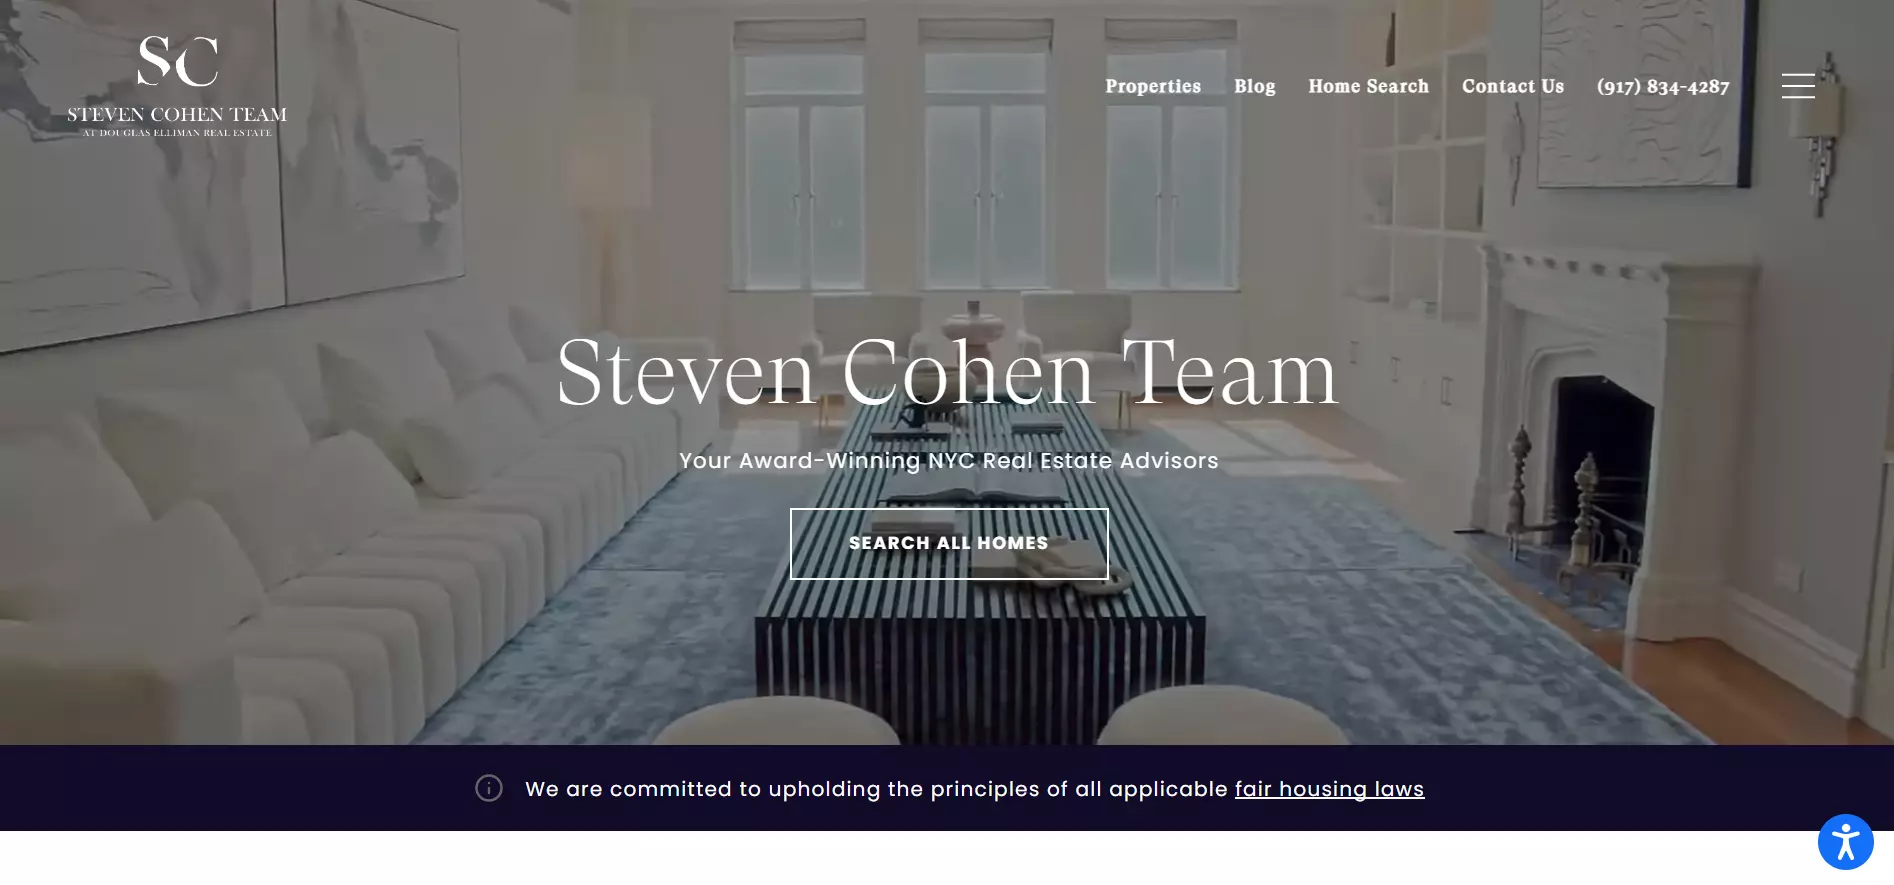 Steven Cohen Team Landing Page